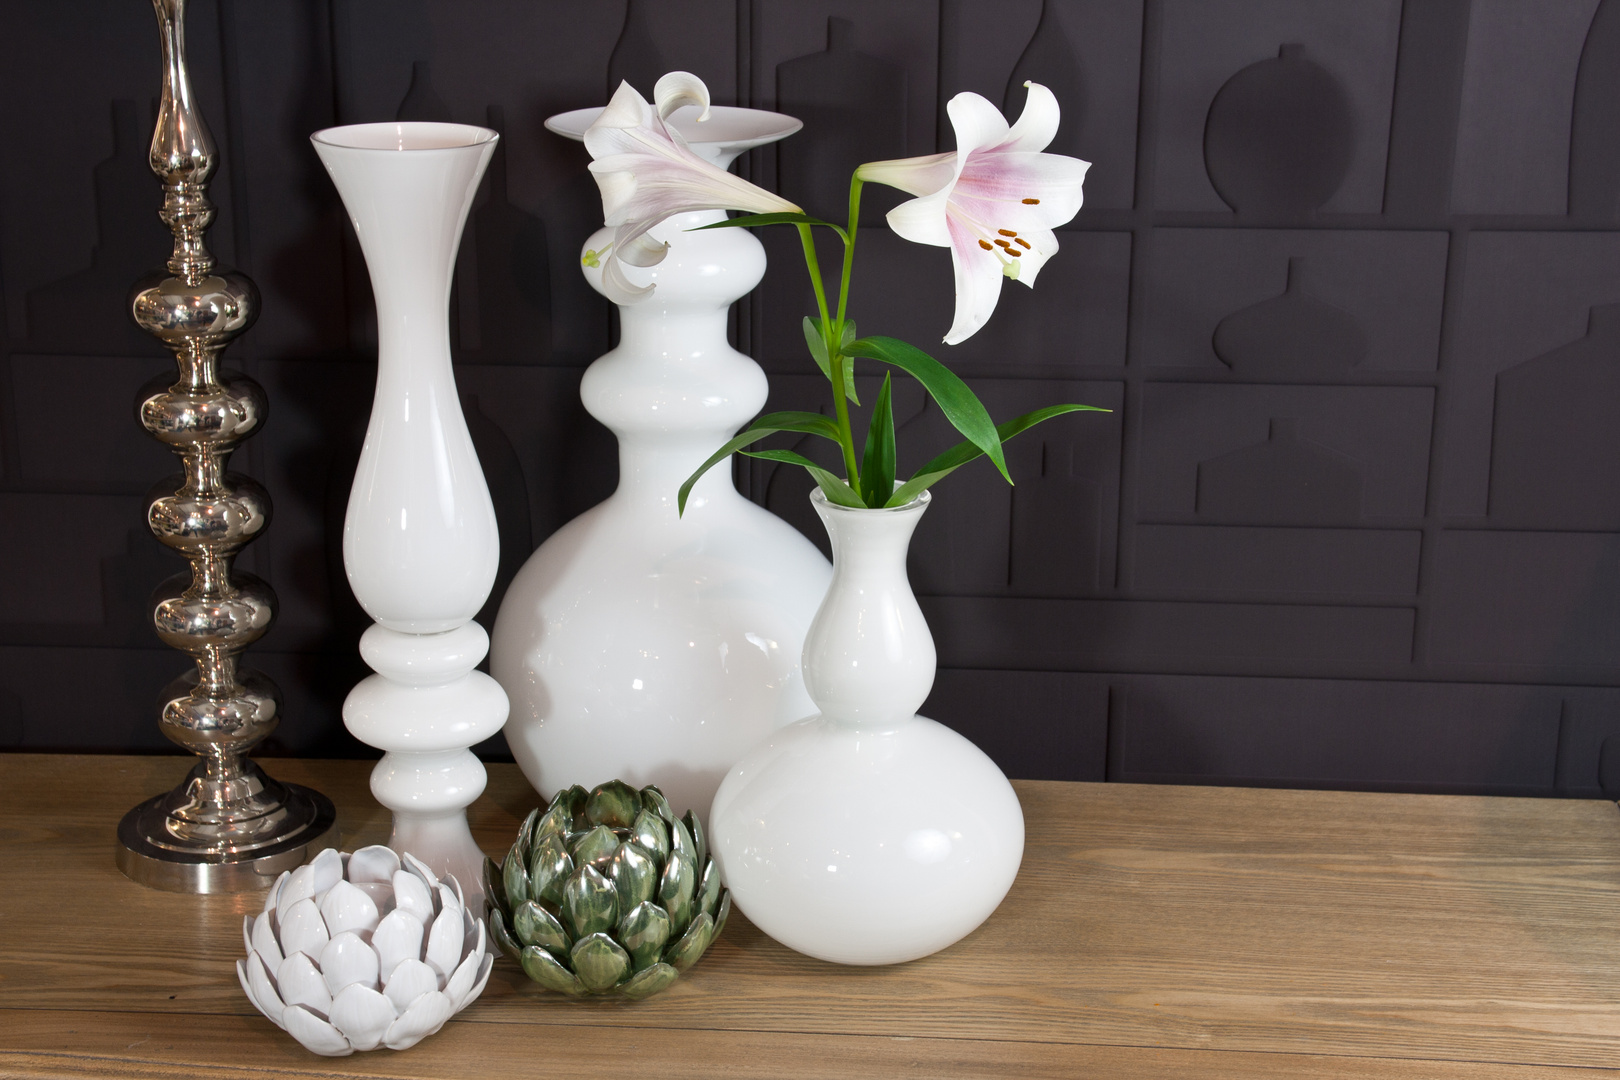 Produktfoto von Vasen